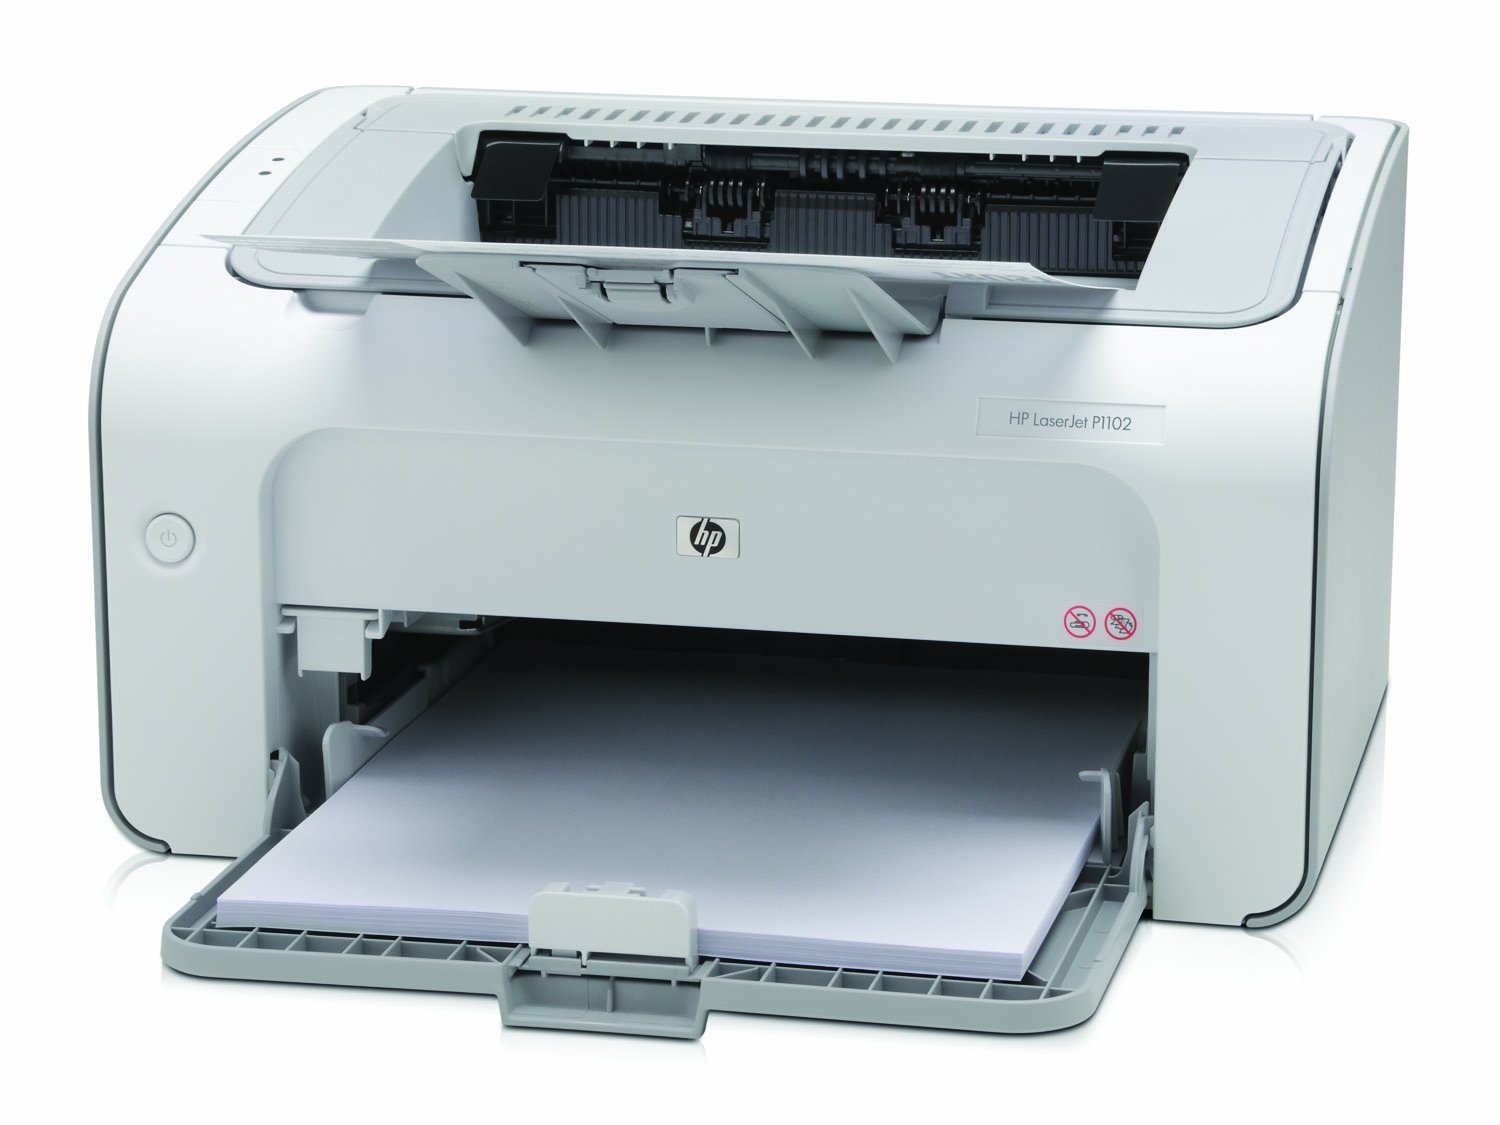 Встановлюємо універсальний драйвер для принтера HP